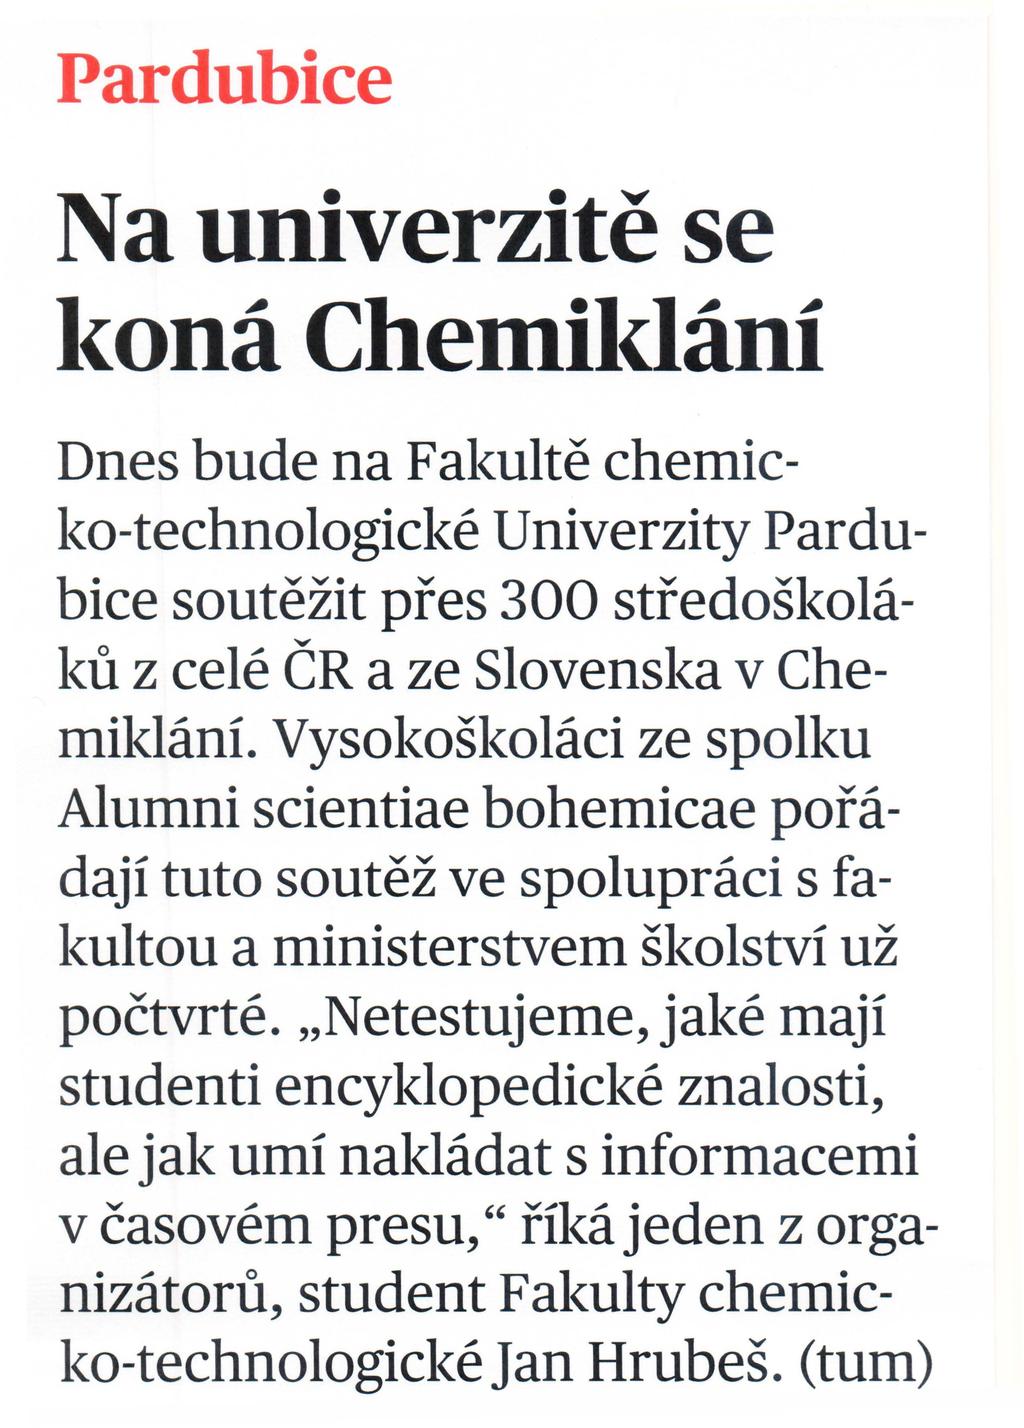 Pardubice Na univerzite se l<ona Chemil<Iani Dnes bude na Fal<ulte chemicko-technologicke Univerzity Pardubice soutezit pfes 300 stfedoskolal<ll z cele CR a ze Slovensl<a v ChemiklanL VysokoSkolaci